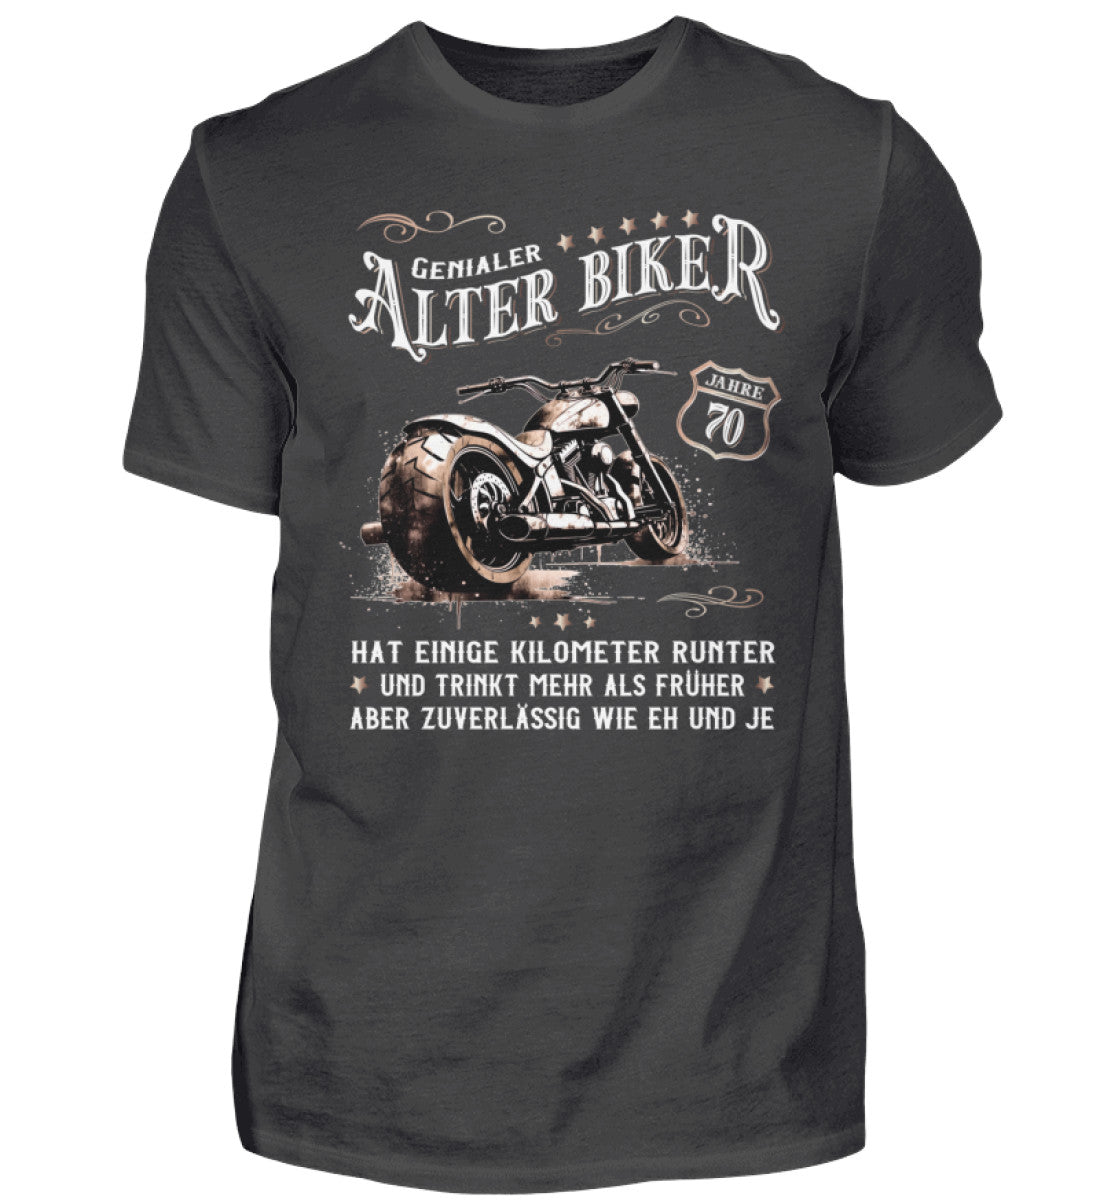 Ein Biker T-Shirt zum Geburtstag für Motorradfahrer von Wingbikers mit dem Aufdruck, Alter Biker - 70 Jahre - Einige Kilometer runter, trinkt mehr - aber zuverlässig wie eh und je - in dunkelgrau.